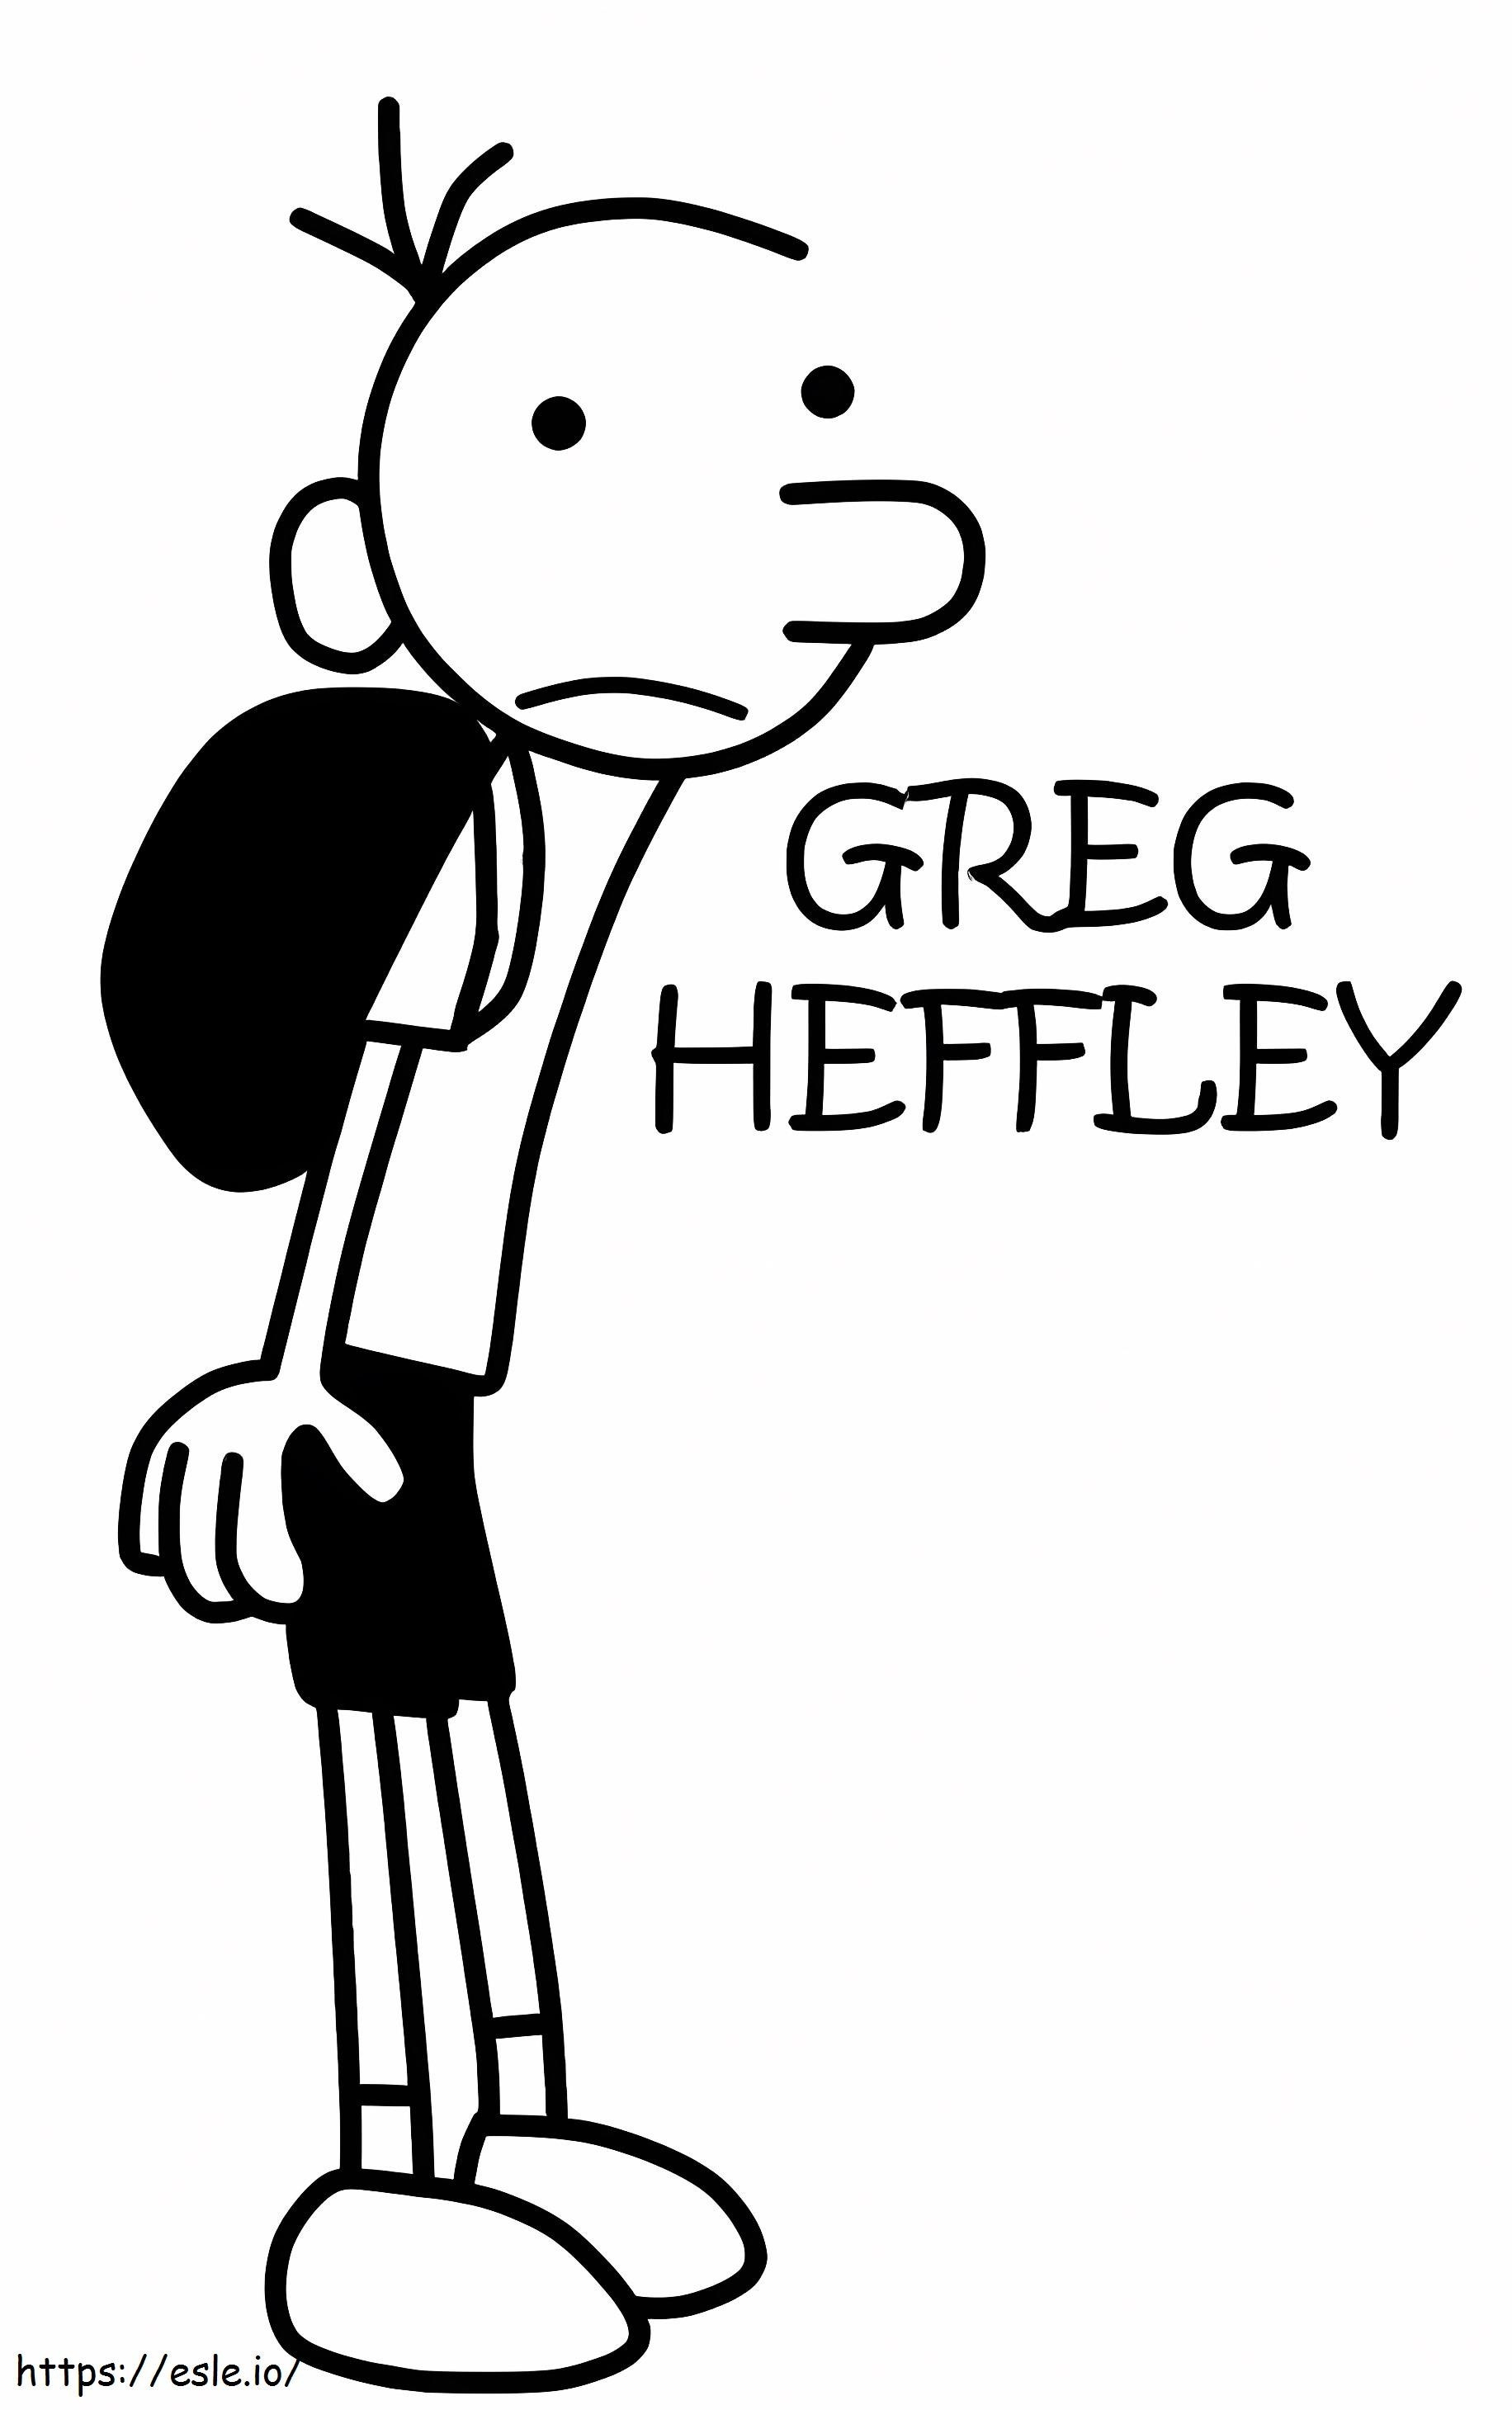 Greg Heffley kleurplaat kleurplaat